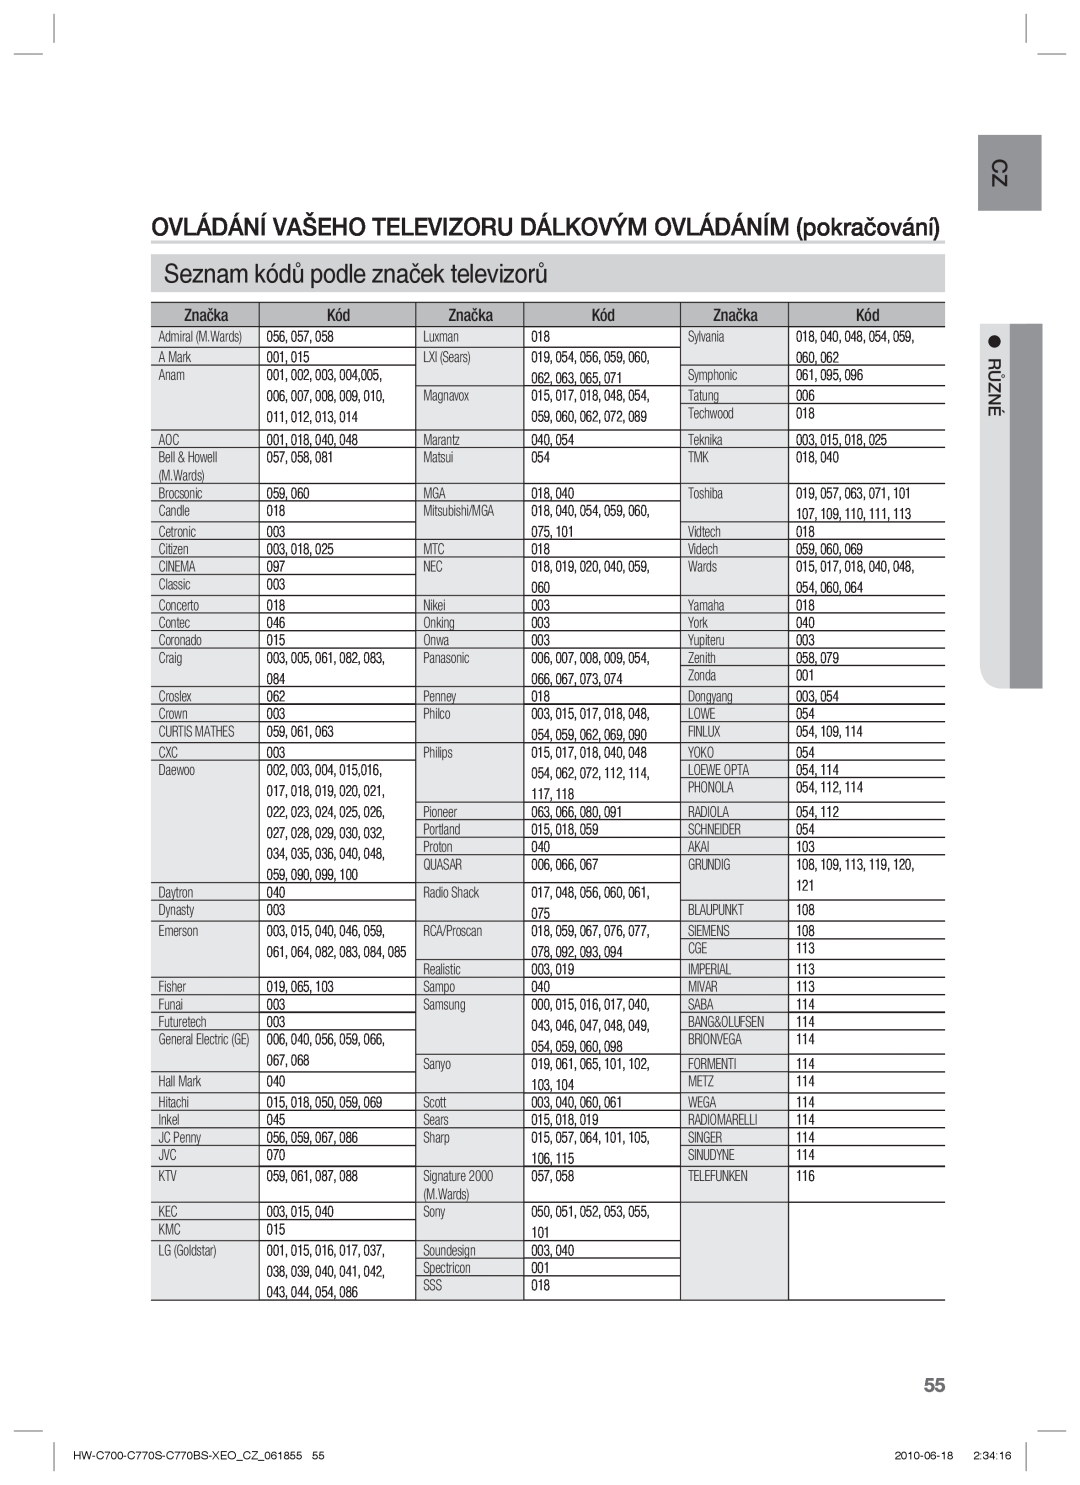 Samsung HW-C770S/EDC manual Seznam kódů podle značek televizorů, OVLÁDÁNÍ VAŠEHO TELEVIZORU DÁLKOVÝM OVLÁDÁNÍM pokračování 